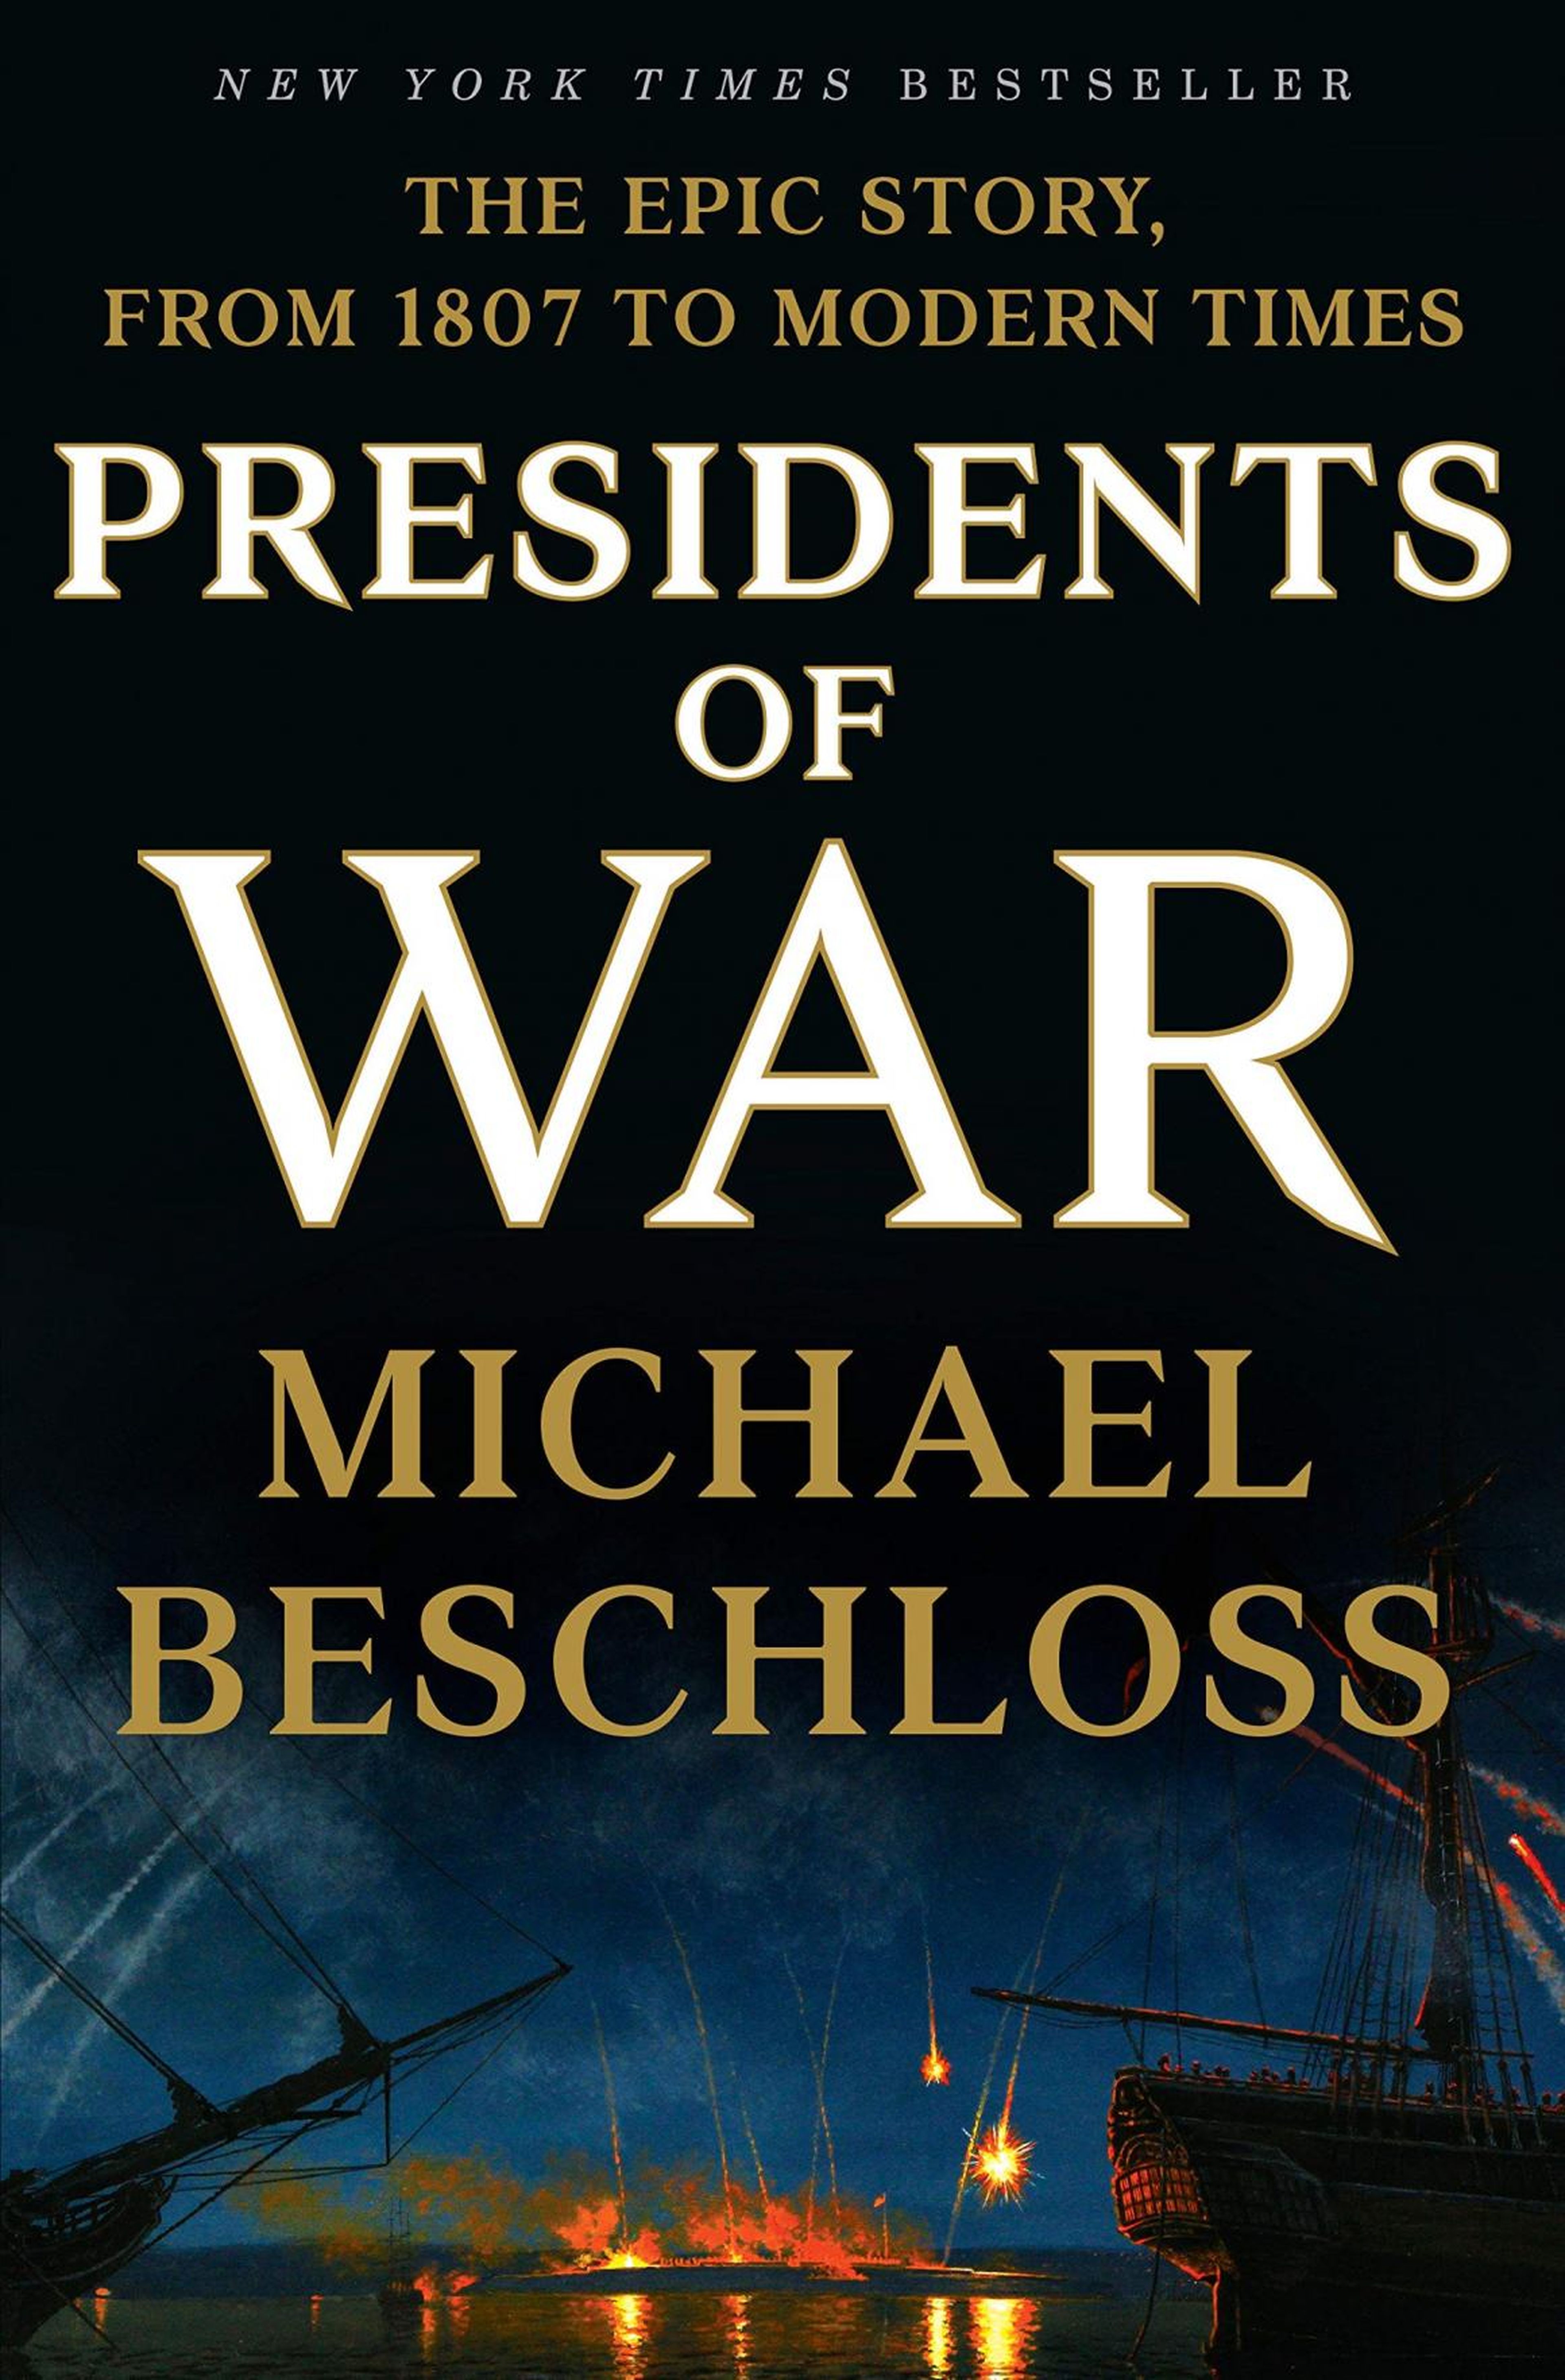 "Presidents of War" by Michael Beschloss